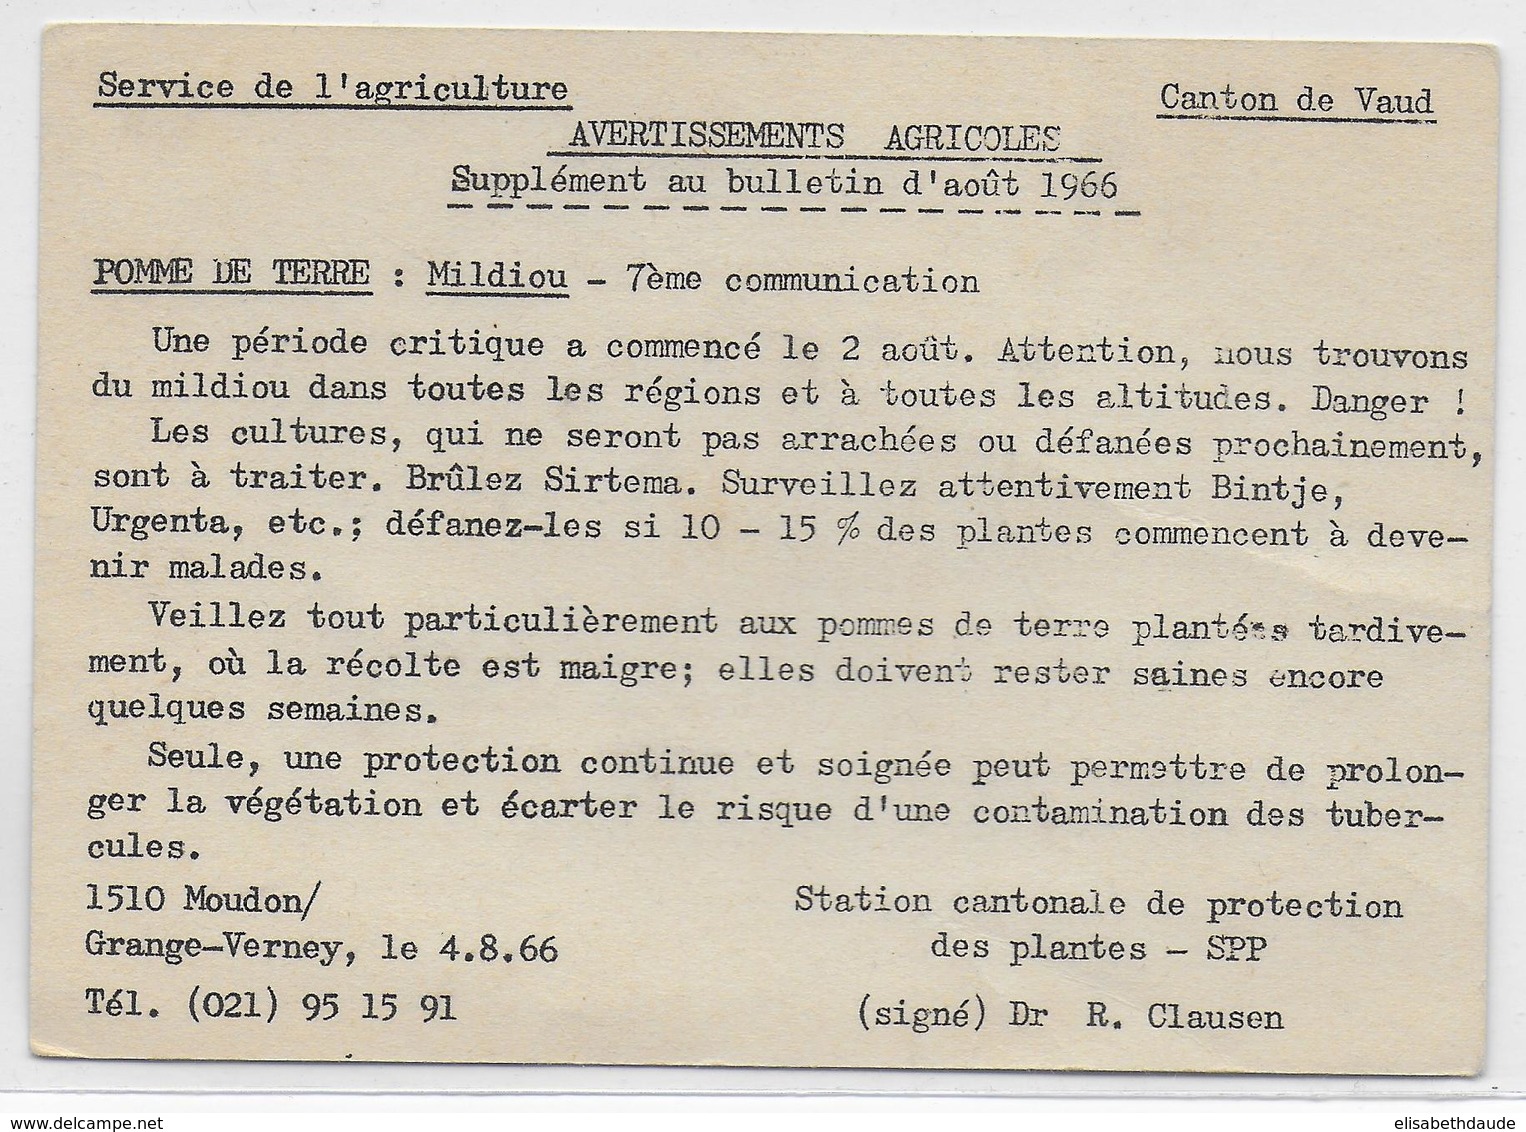 1966 - SUISSE - CARTE FRANCHISE OFFICIEL De La SPP à MOUDON (PROTECTION DES PLANTES - AVERTISSEMENT) => GLAND - Marcofilia